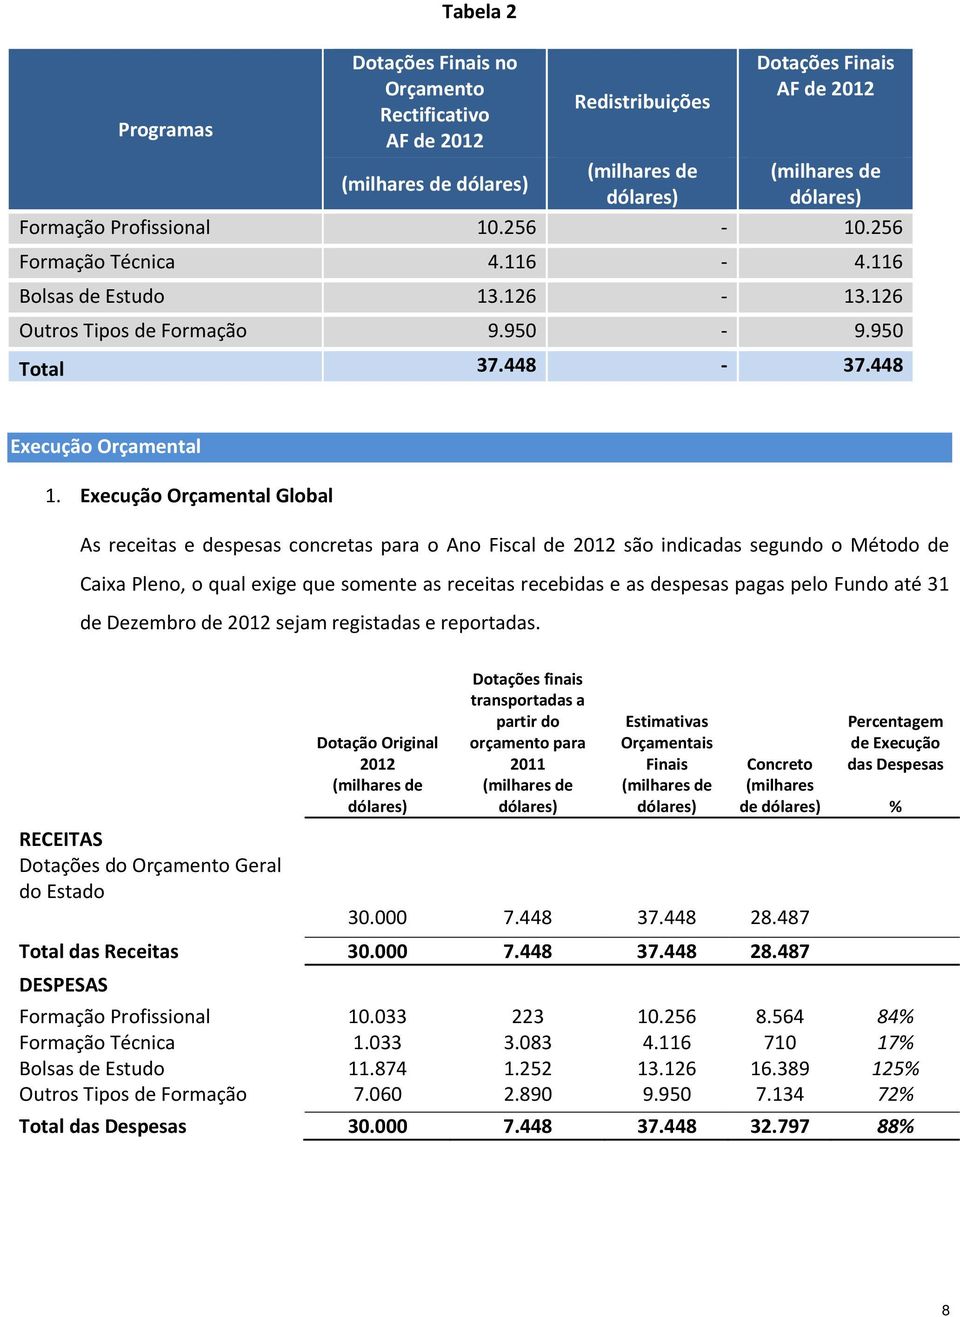 Execução Orçamental Global As receitas e despesas concretas para o Ano Fiscal de 2012 são indicadas segundo o Método de Caixa Pleno, o qual exige que somente as receitas recebidas e as despesas pagas